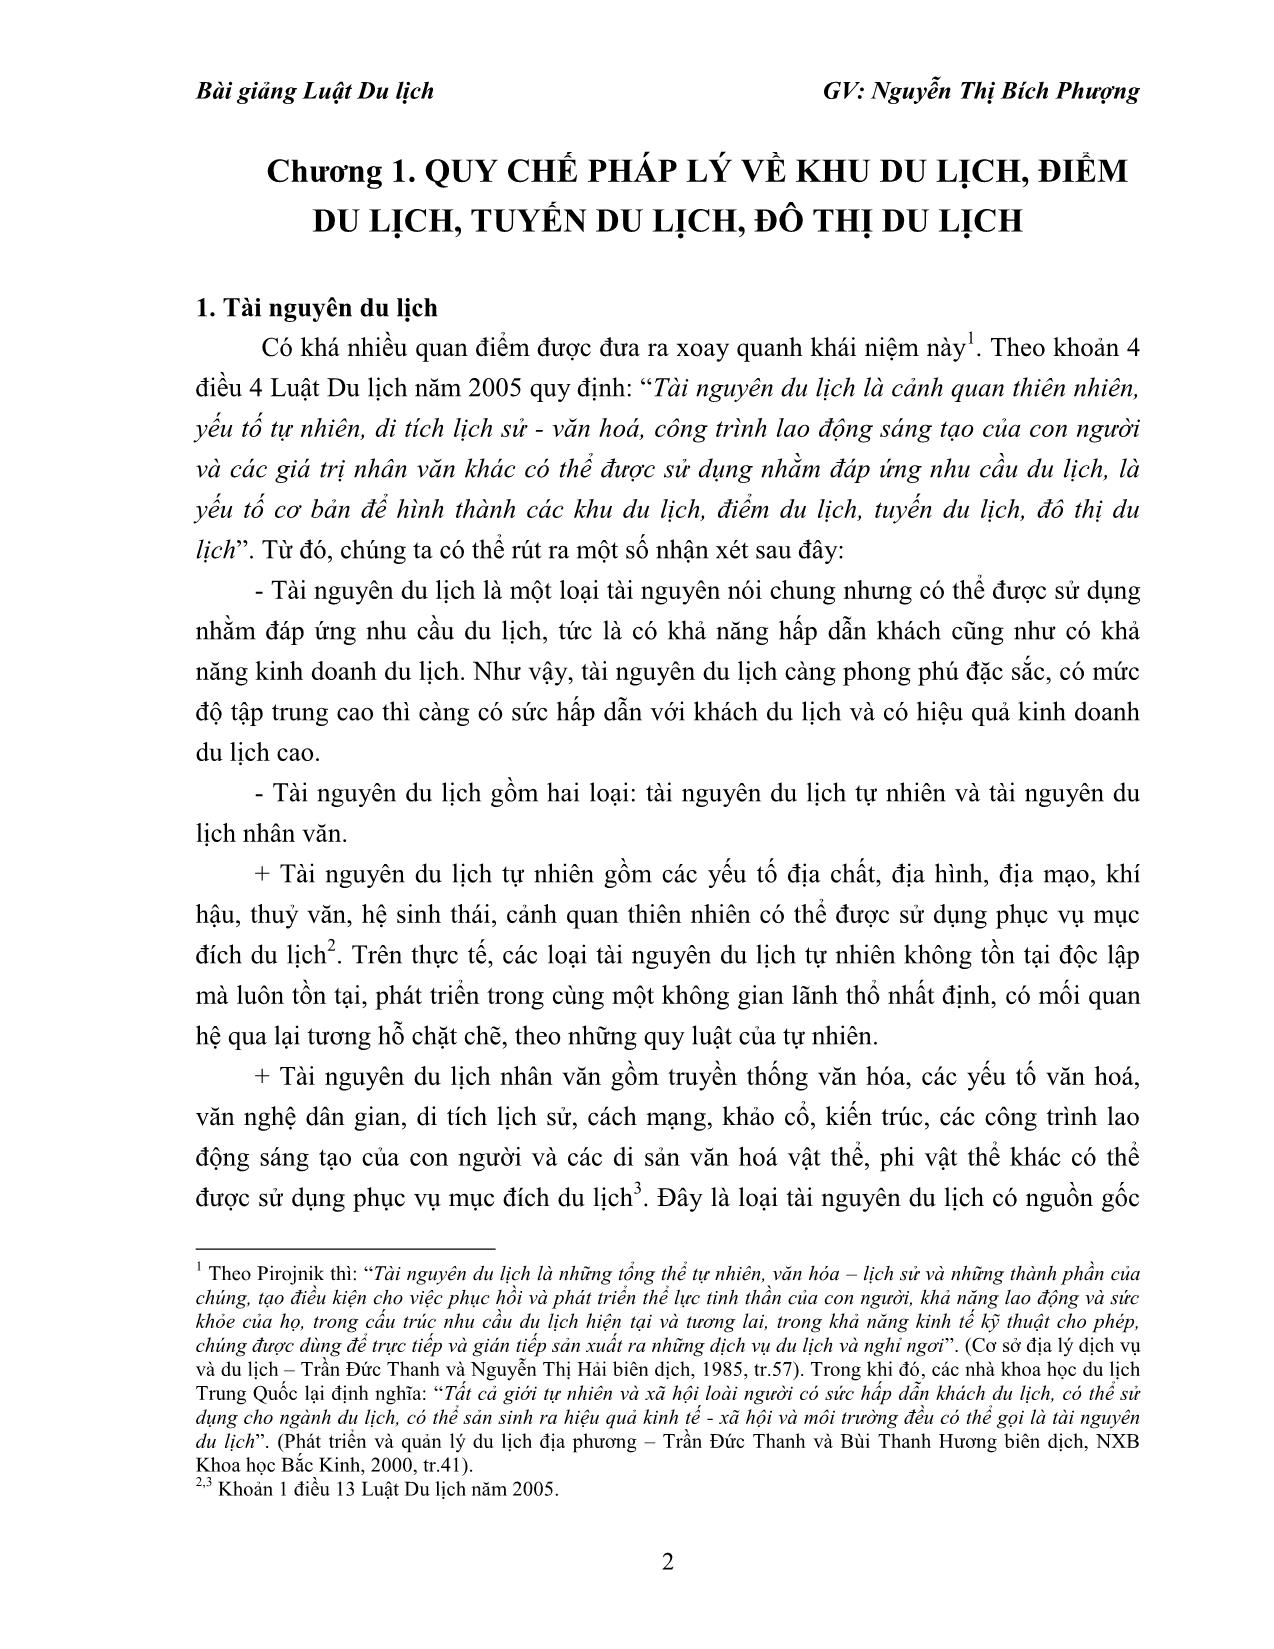 Bài giảng Luật du lịch - Nguyễn Thị Bích Phượng trang 2